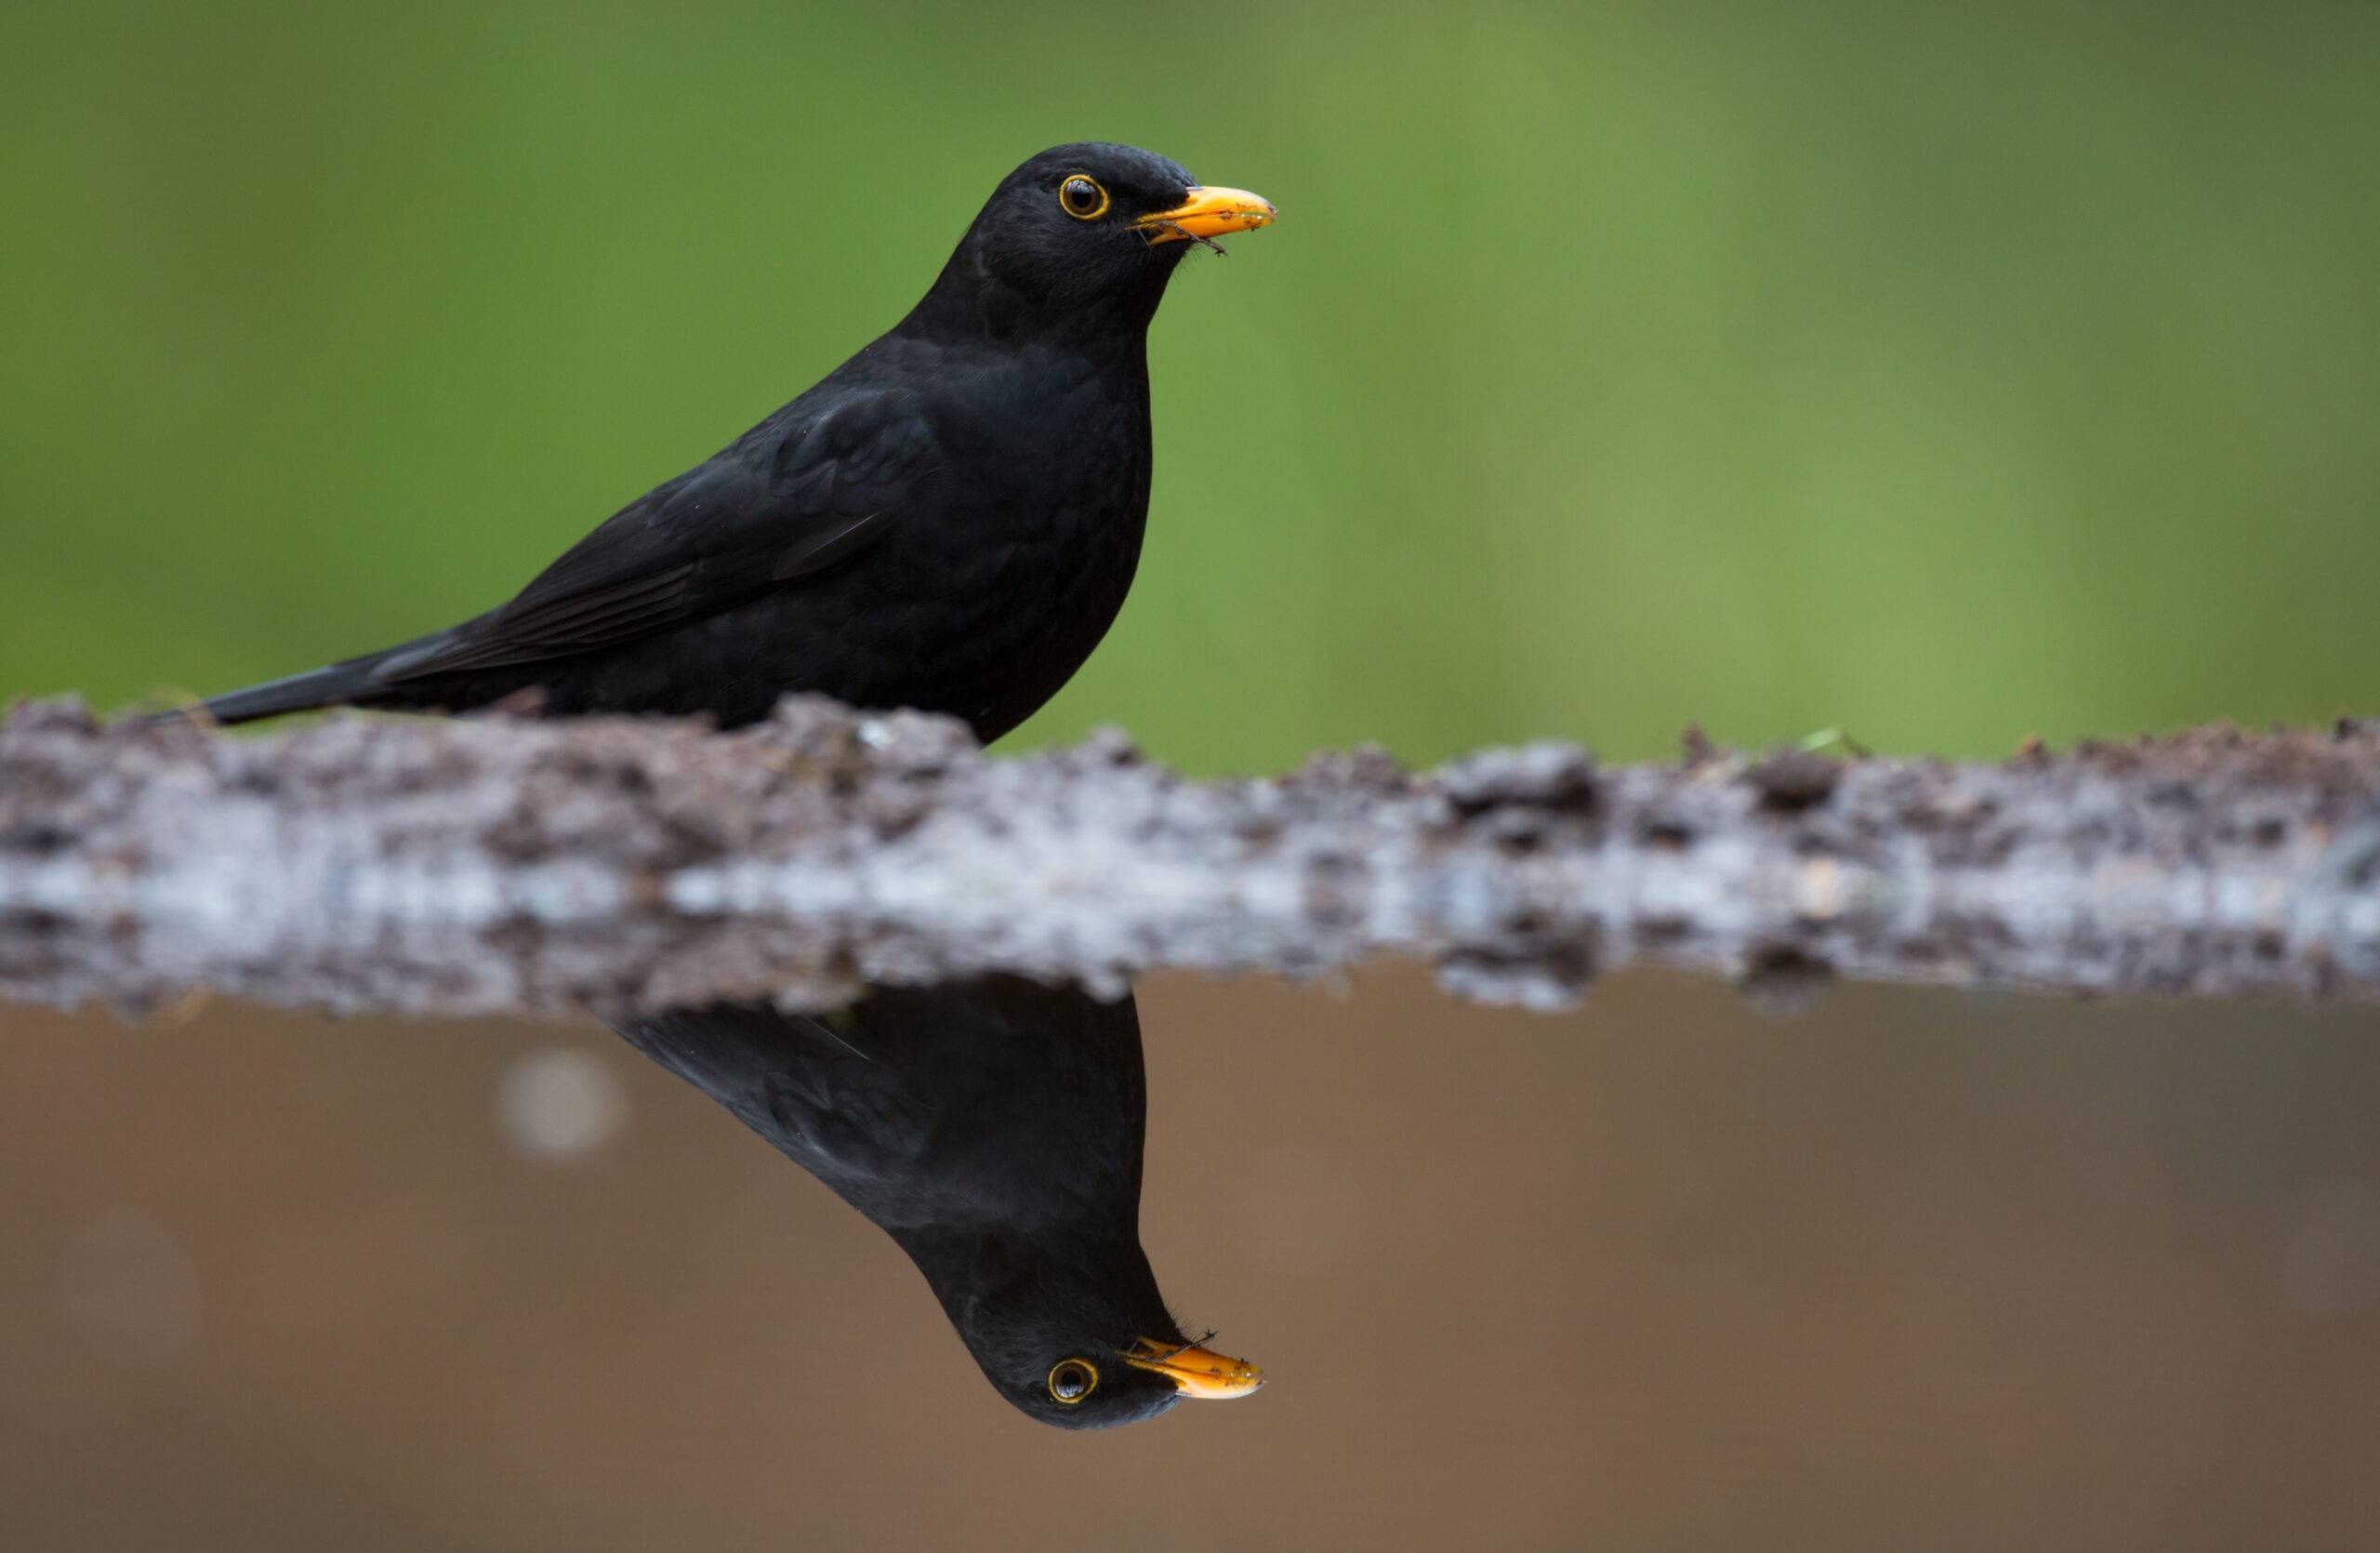 Boswachter John: Black birds